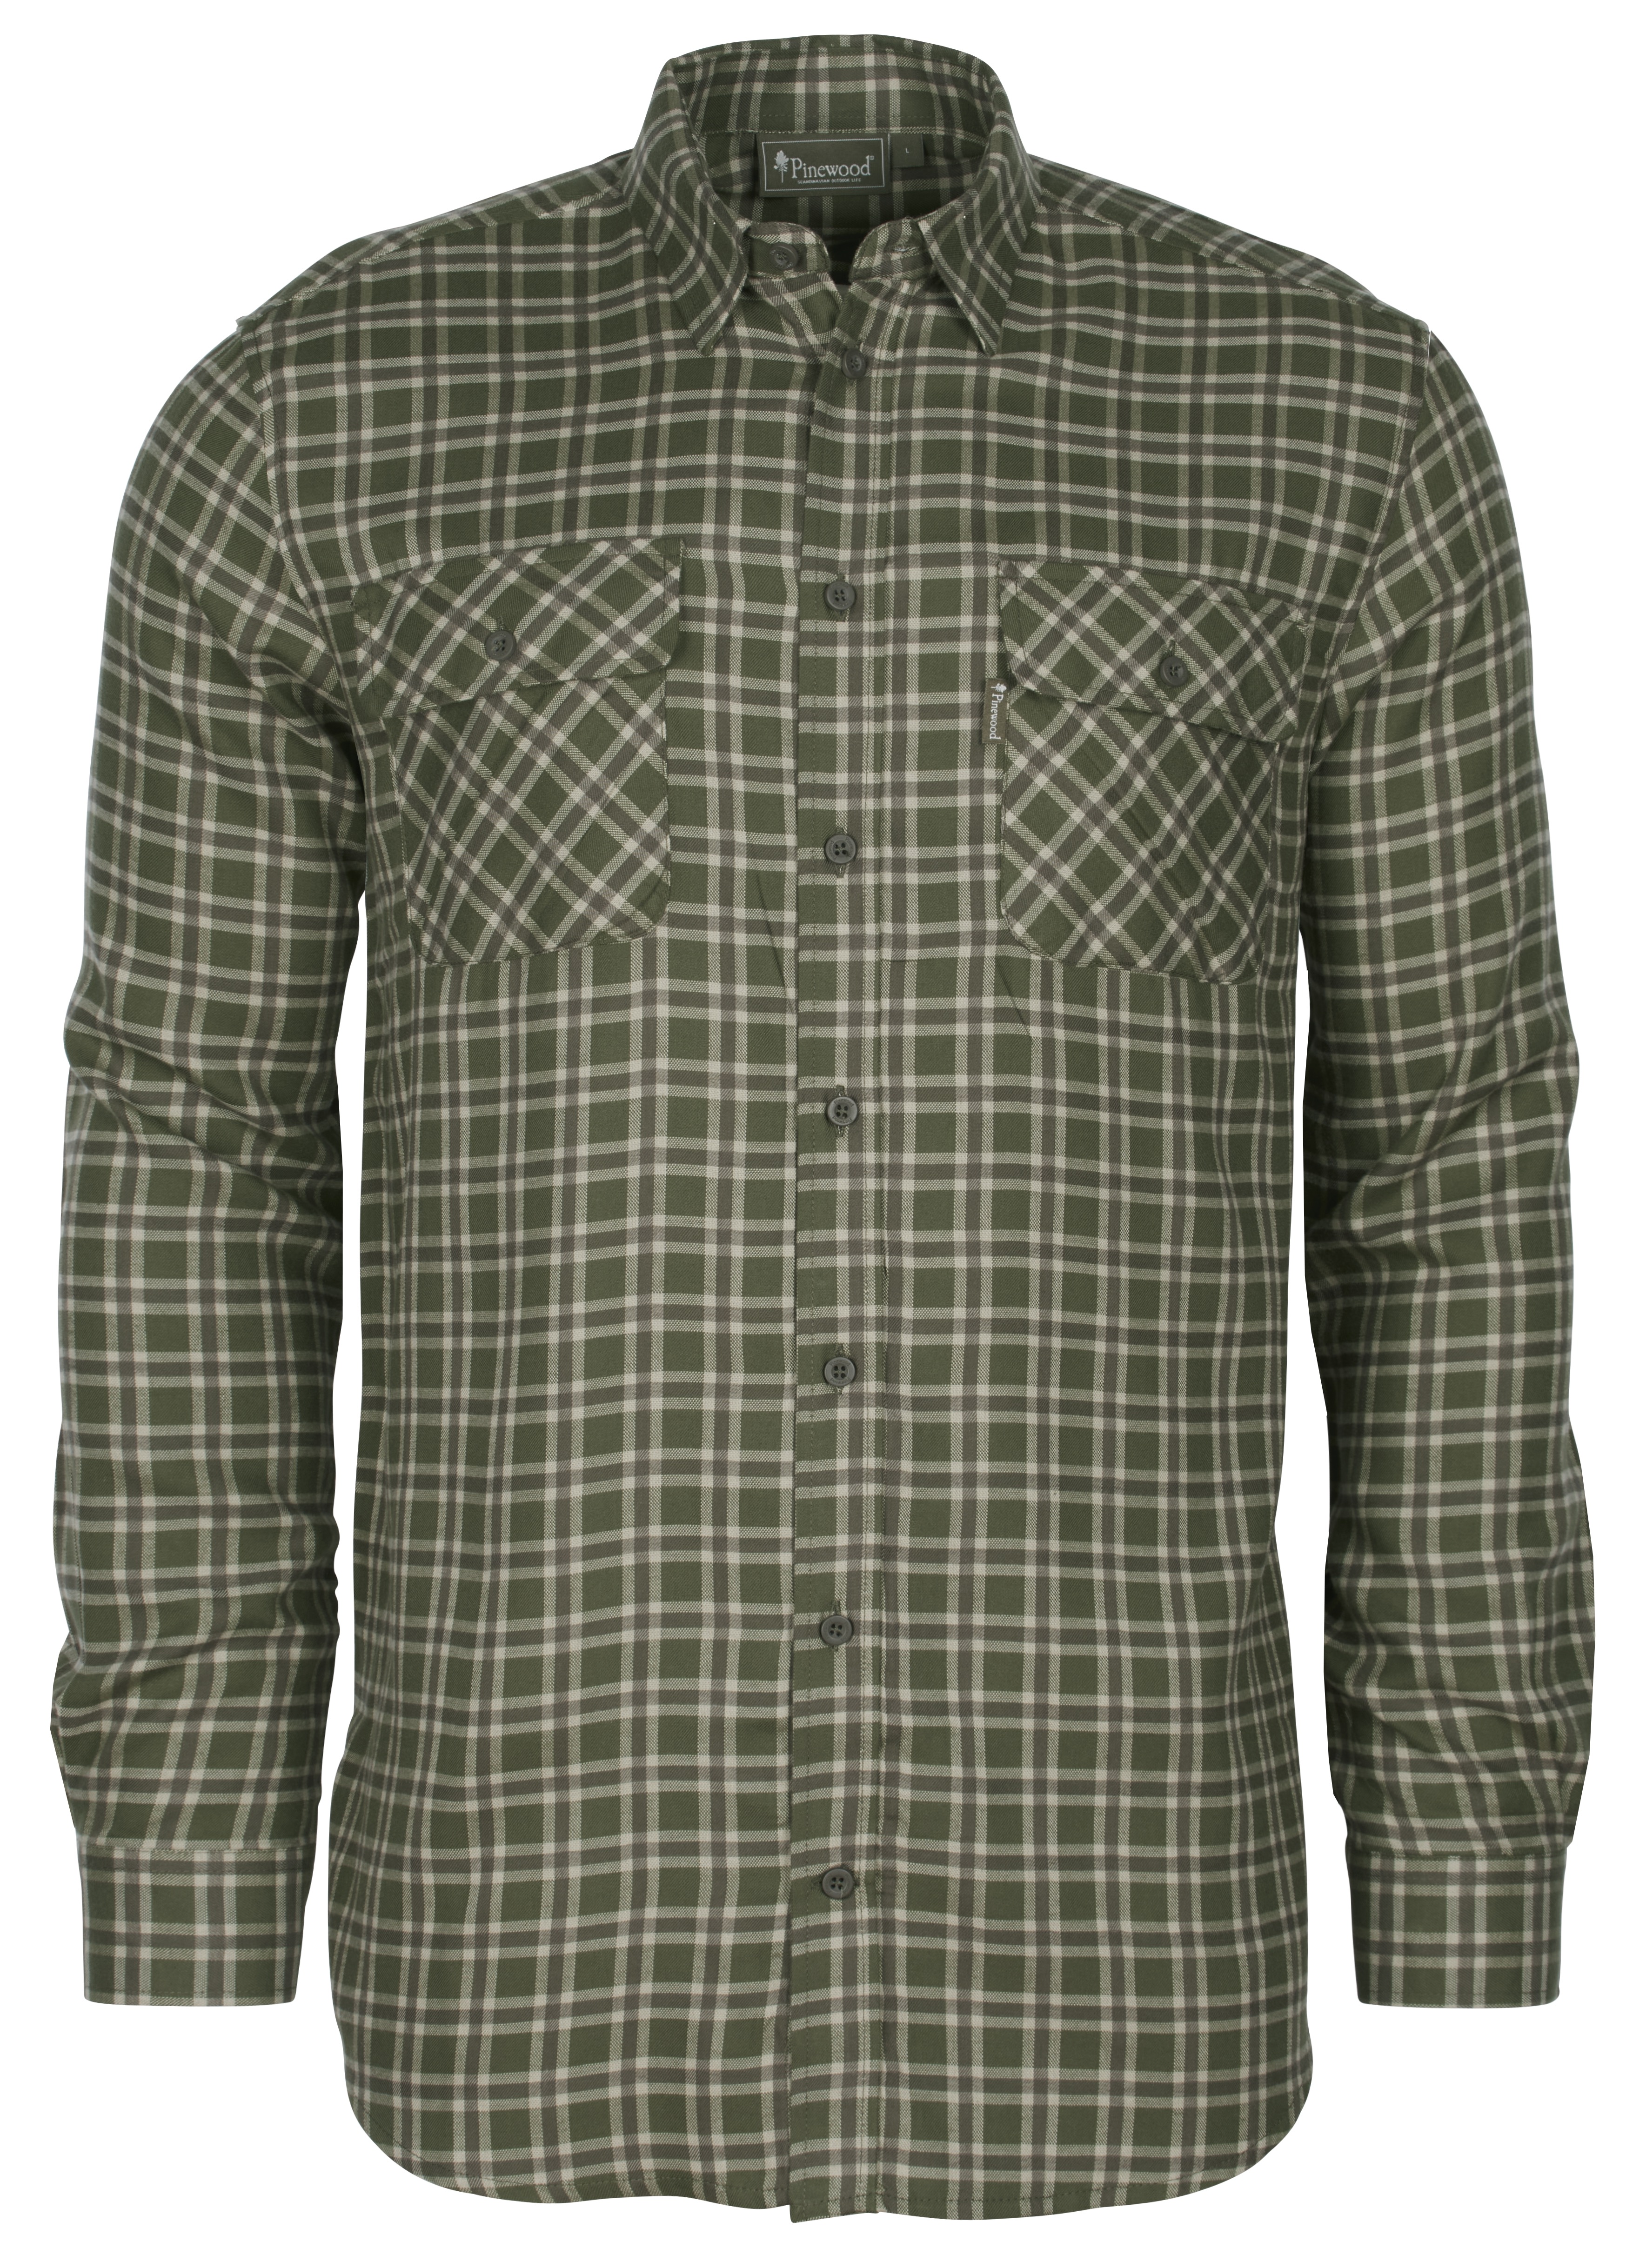 Pinewood Men’s Lappland Wool Shirt Mossgreen/Light Khaki